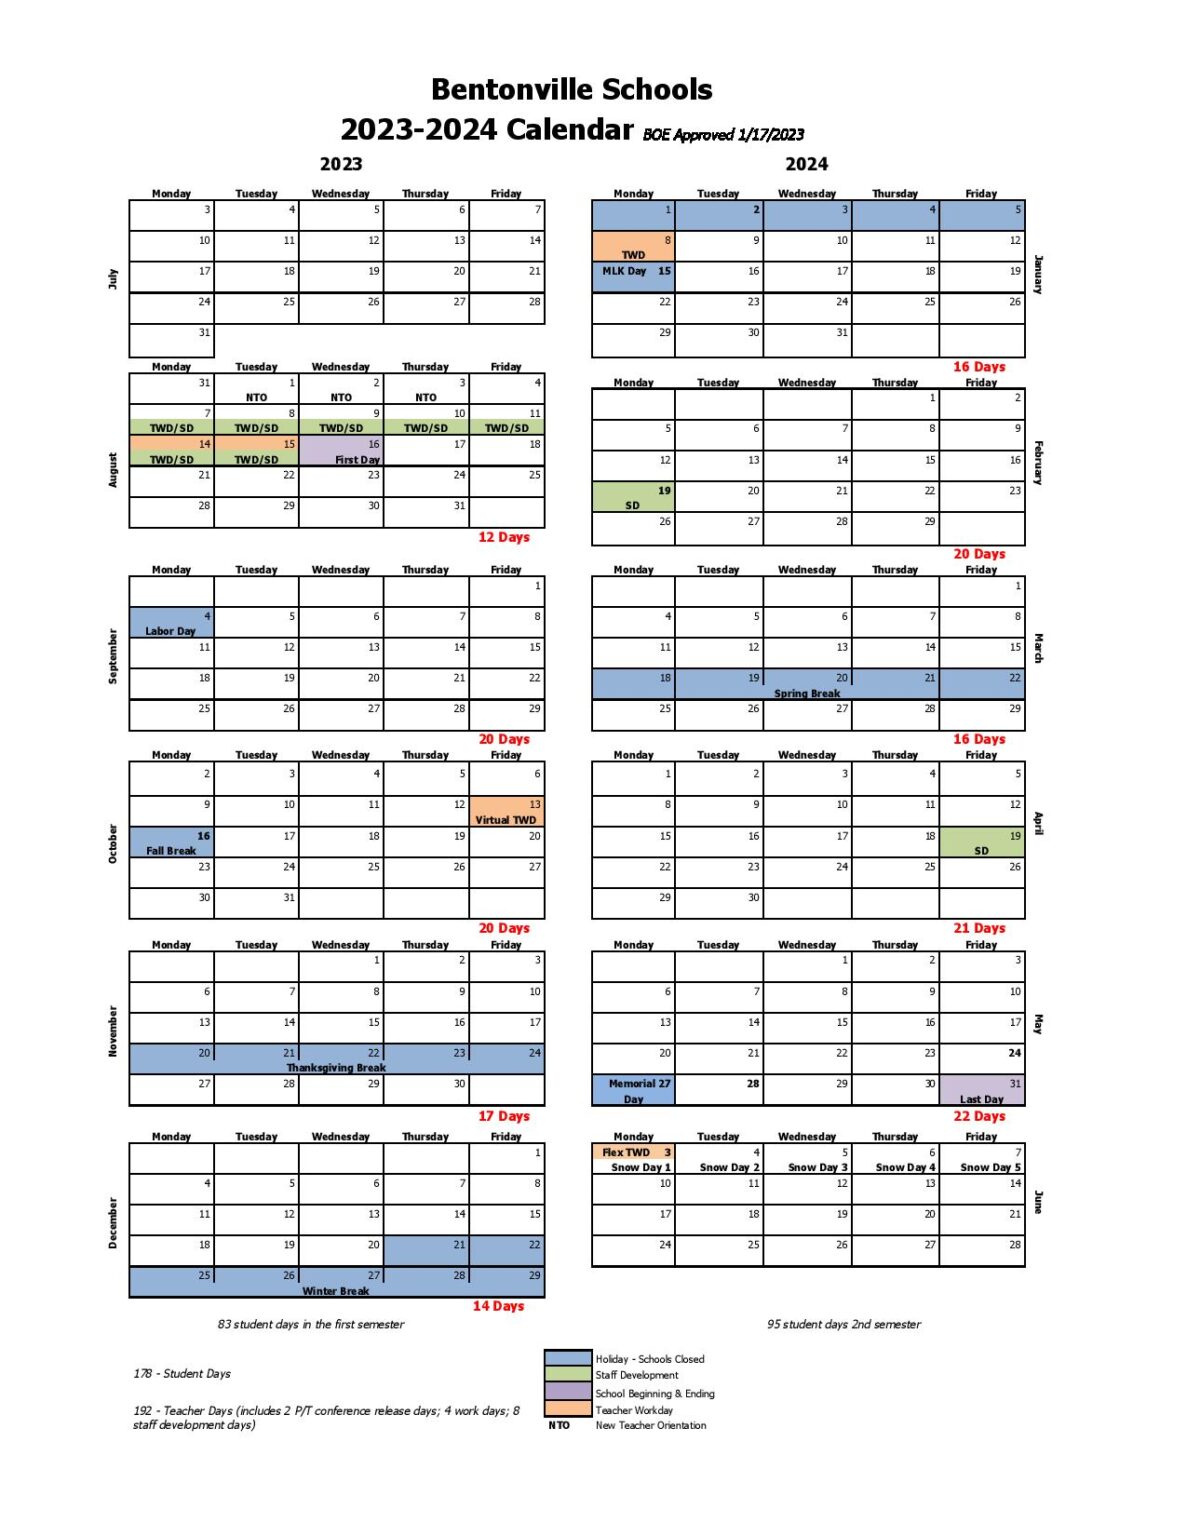 Bentonville Public Schools Calendar 2024 in PDF